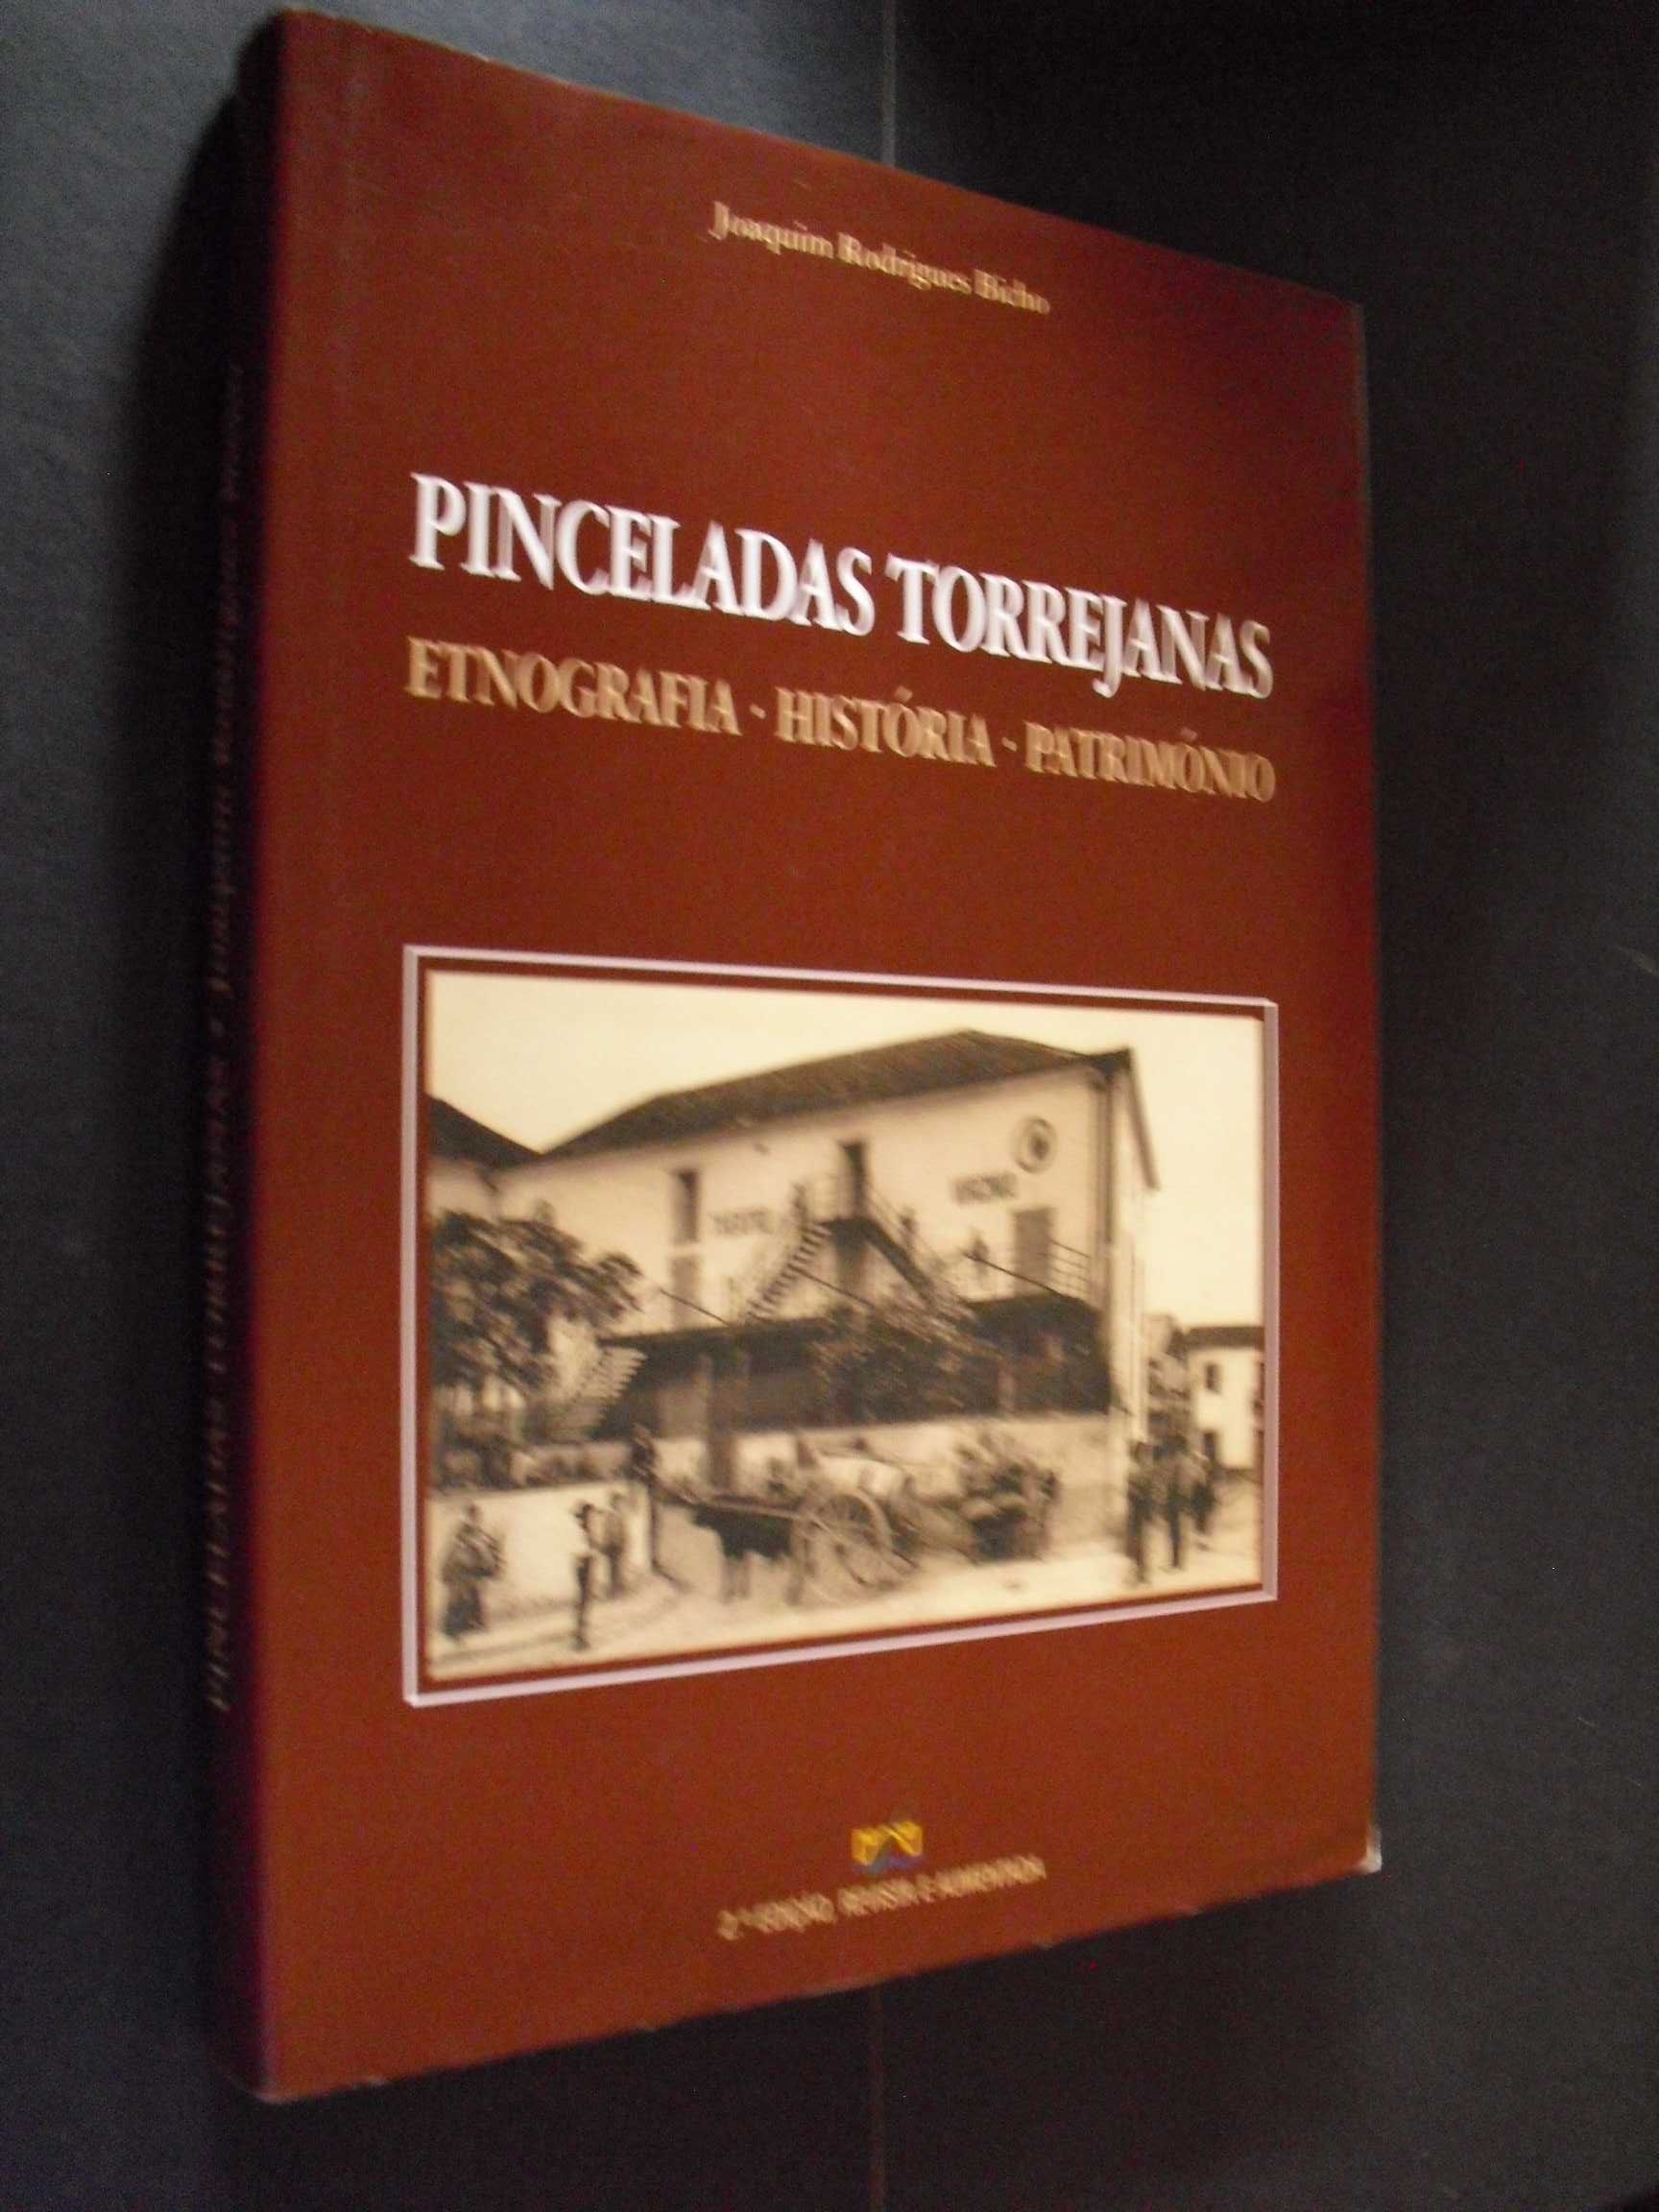 Bicho (Joaquim Rodriges);Pinceladas Torrejanas-Etnografia-História